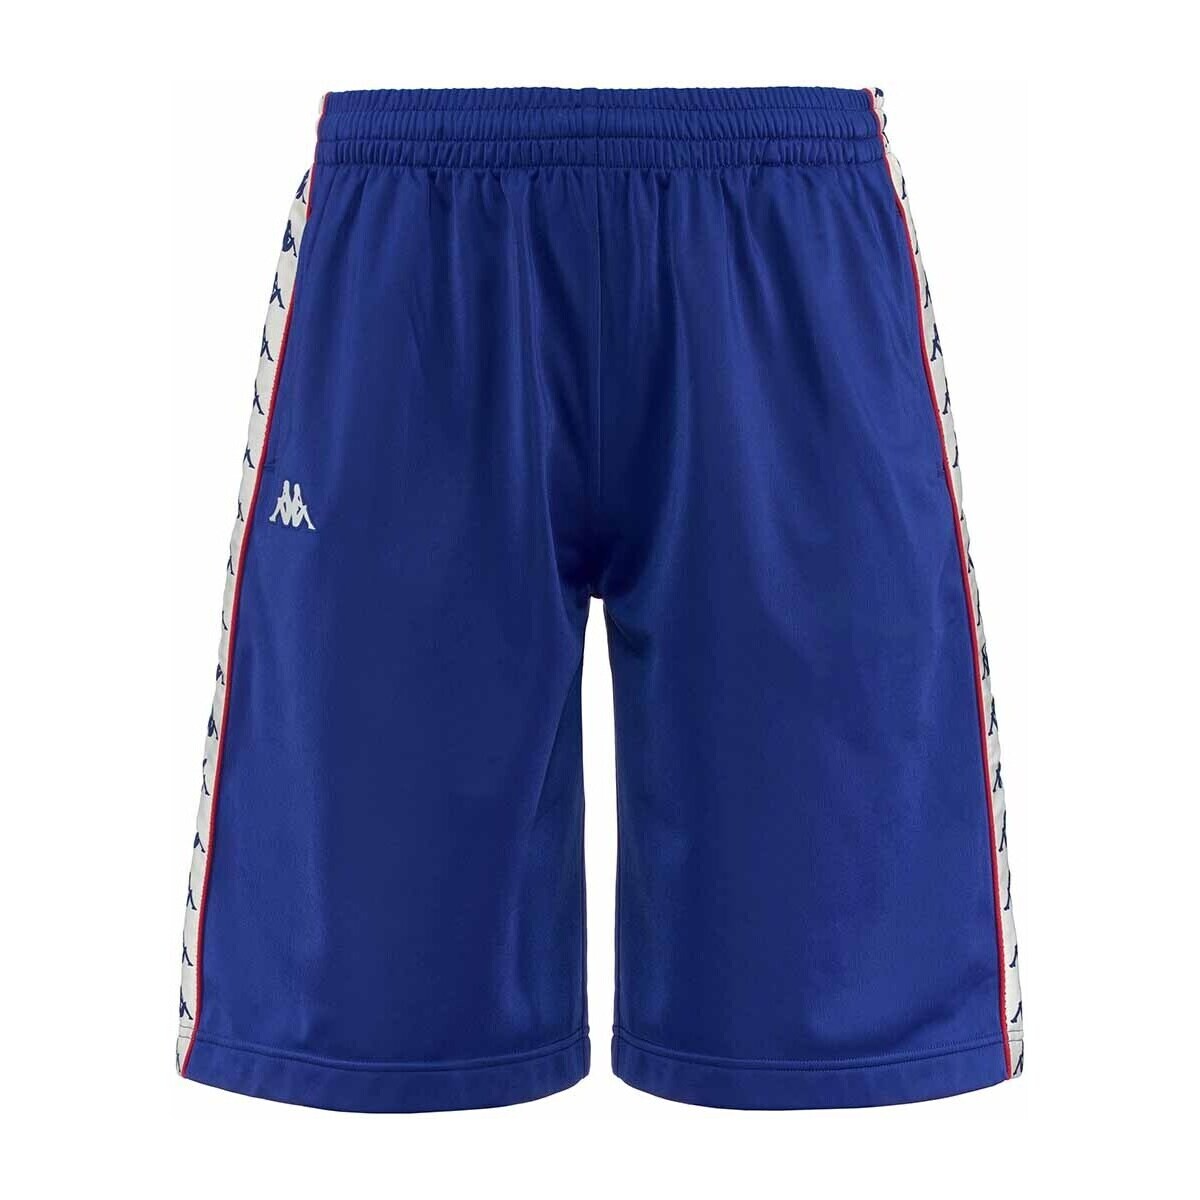 Vêtements Homme Shorts / Bermudas Kappa Short 222 Banda Treadwellz Bleu